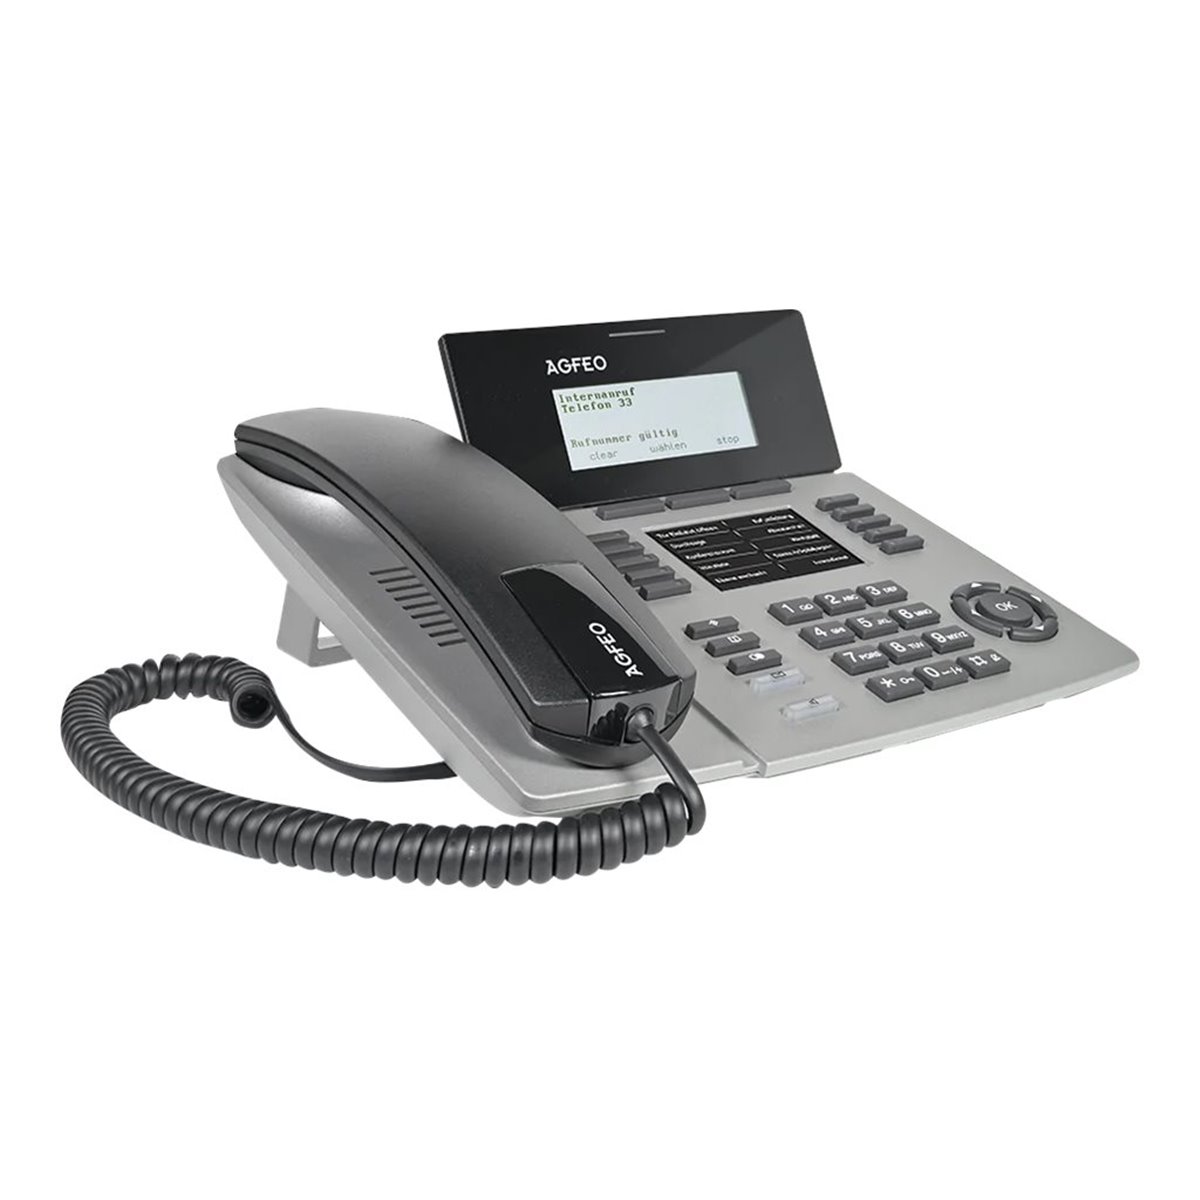 AGFEO ST 54 IP SENSORfon silber - VoIP-Telefon - Voice-Over-IP